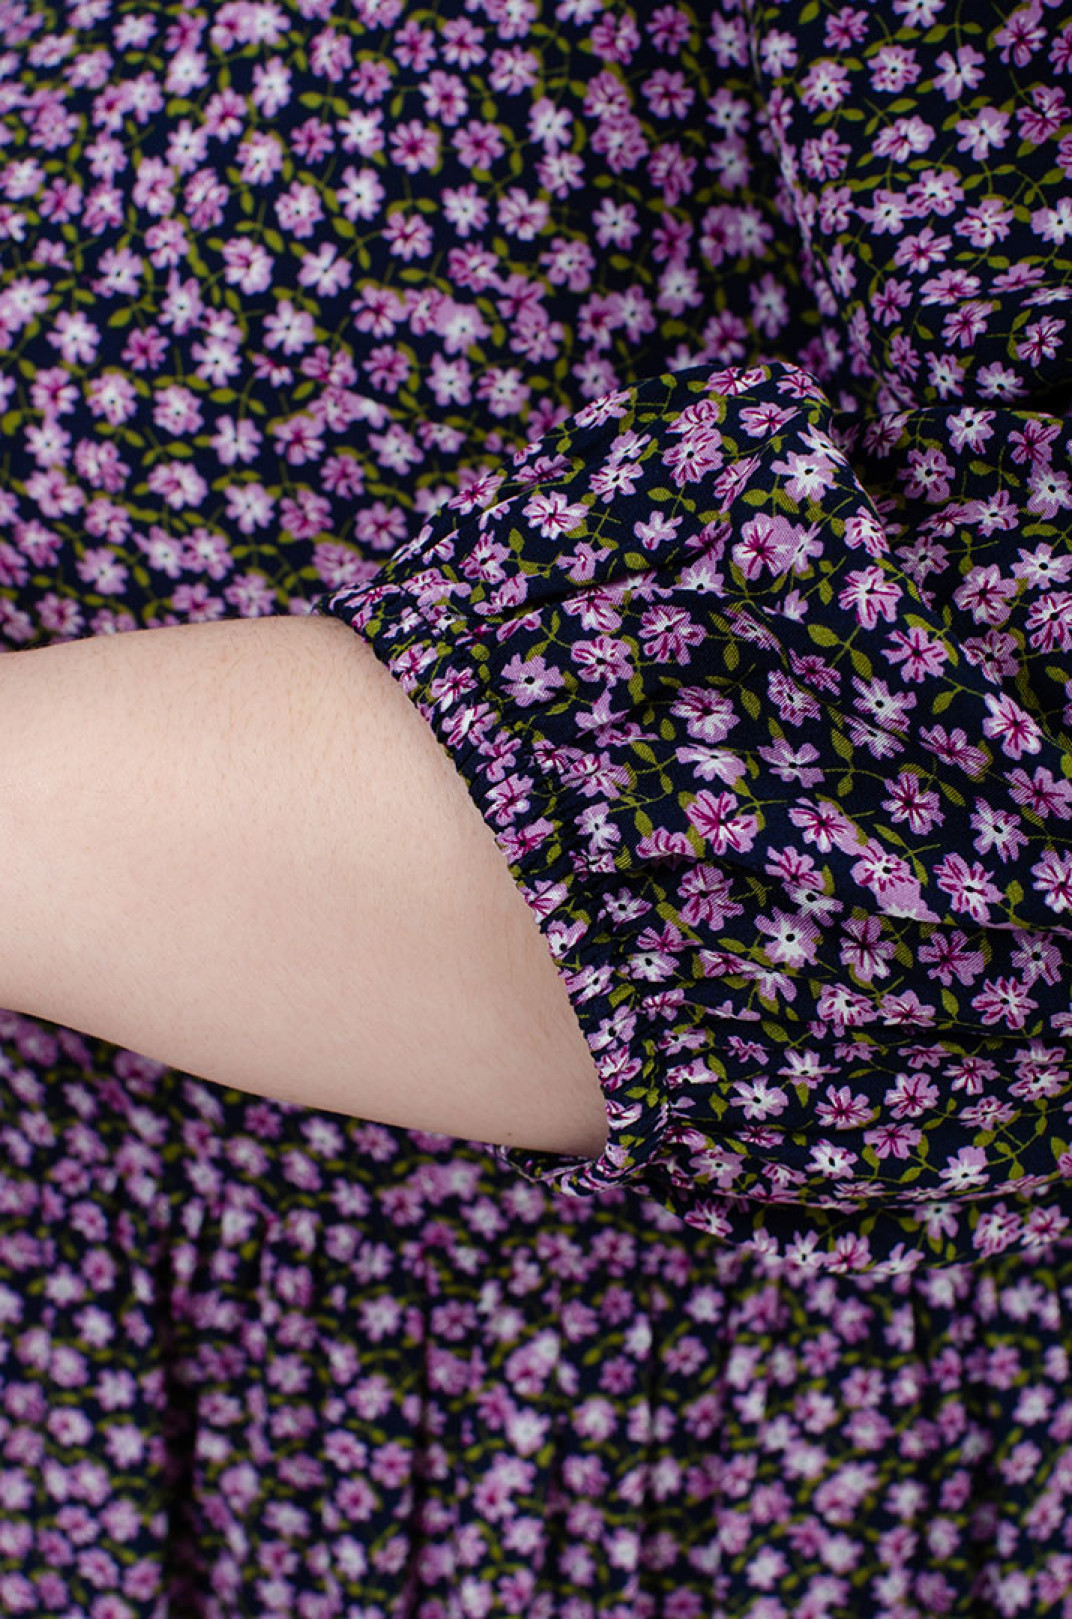 Сукня міні з воланами в принт мільфльор розміри 50-64 в кольорах